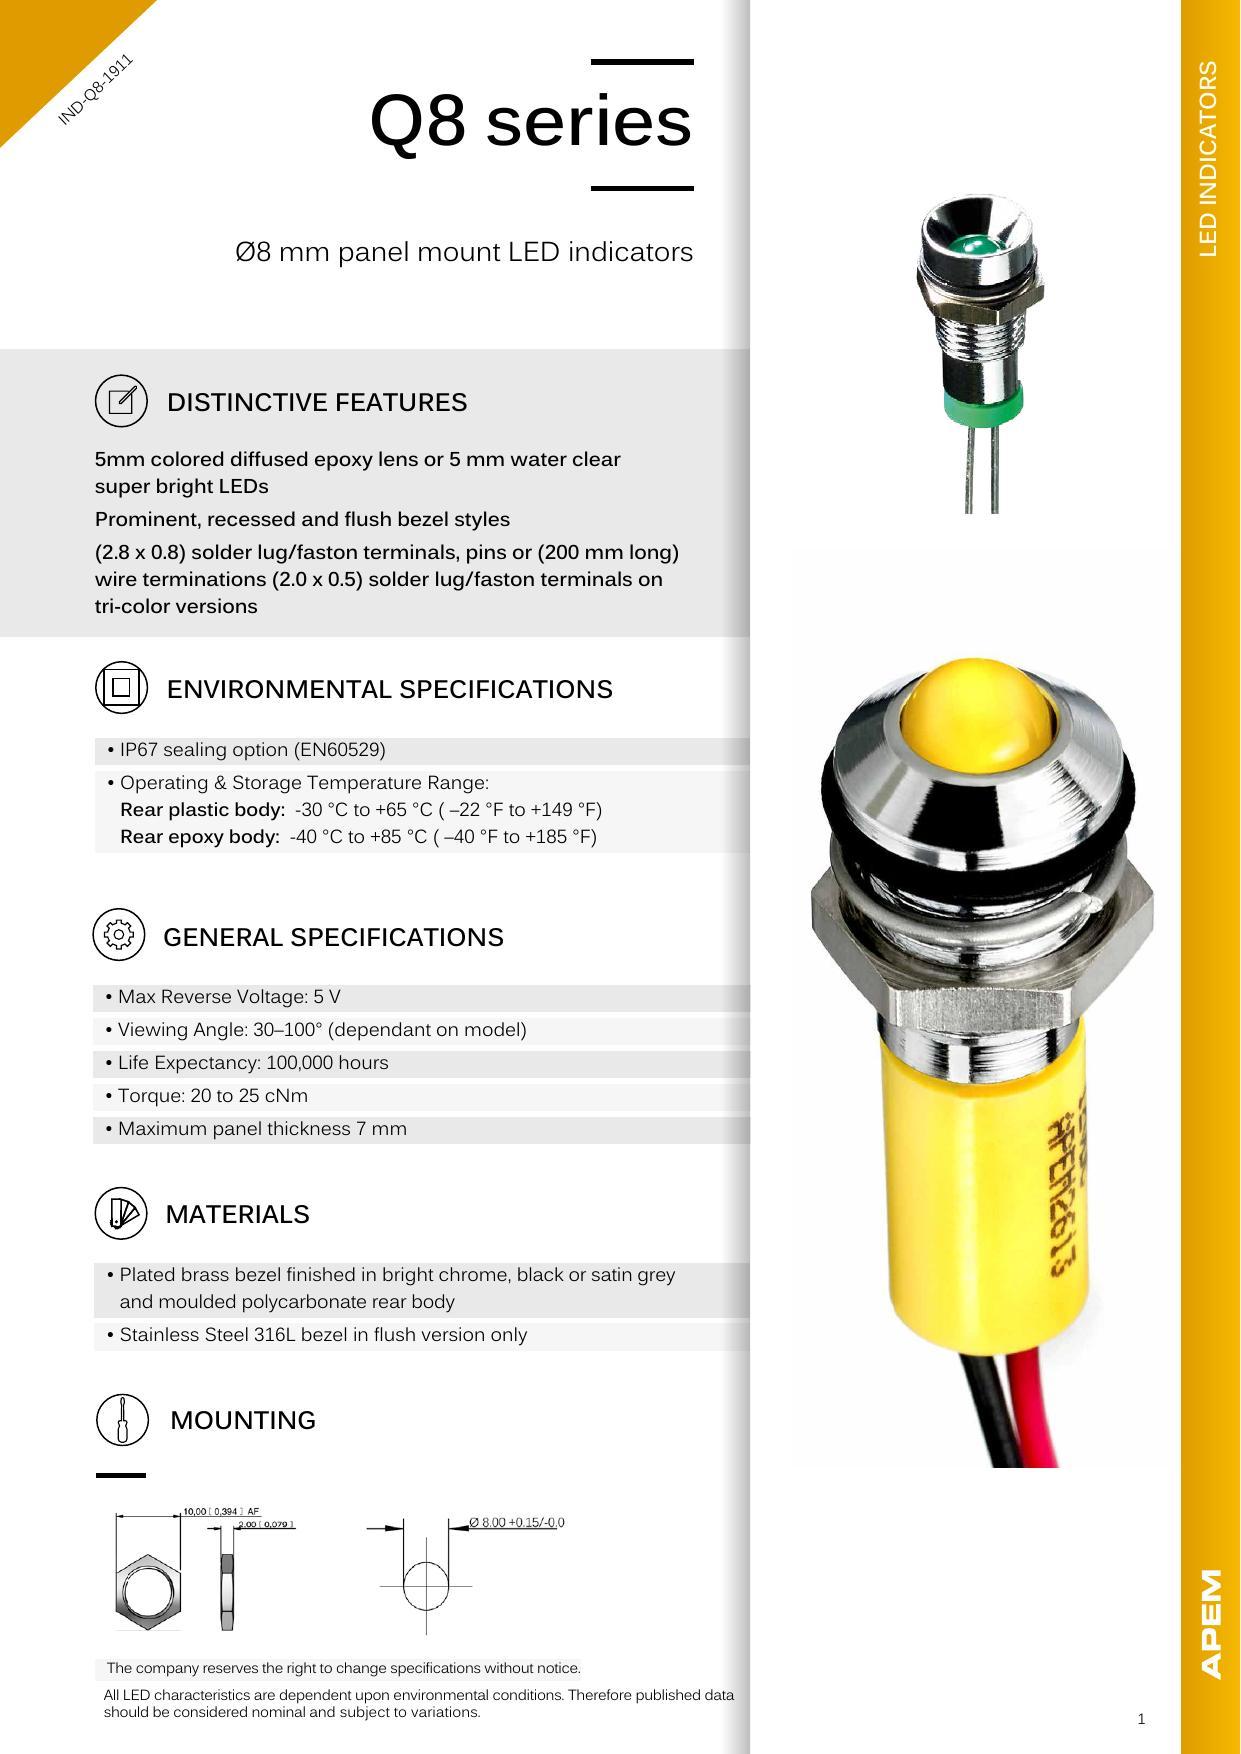 q8-series-08-mm-panel-mount-led-indicators.pdf